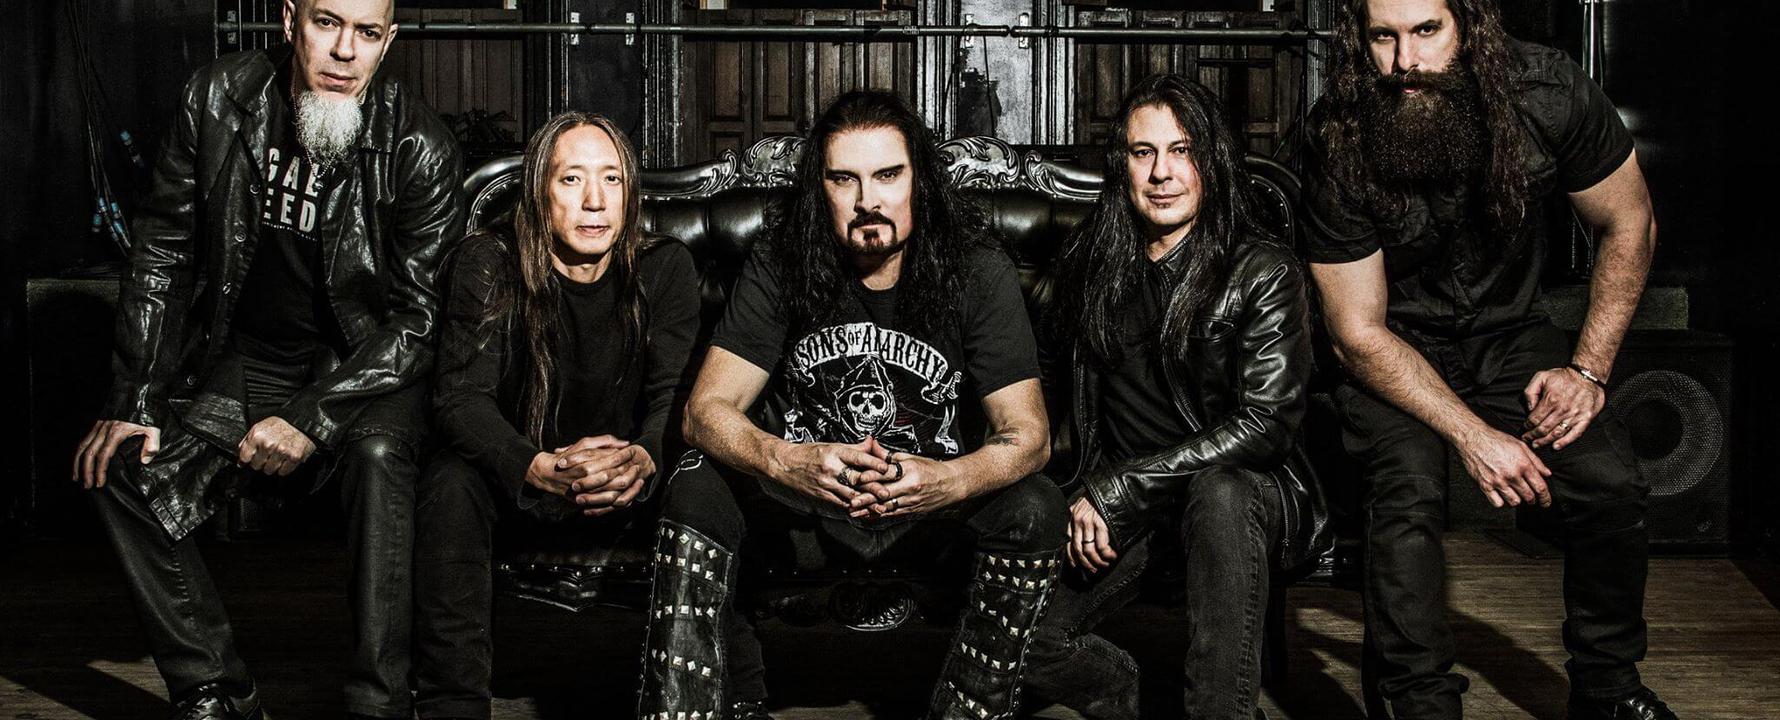 Fotografía promocional de Dream Theater